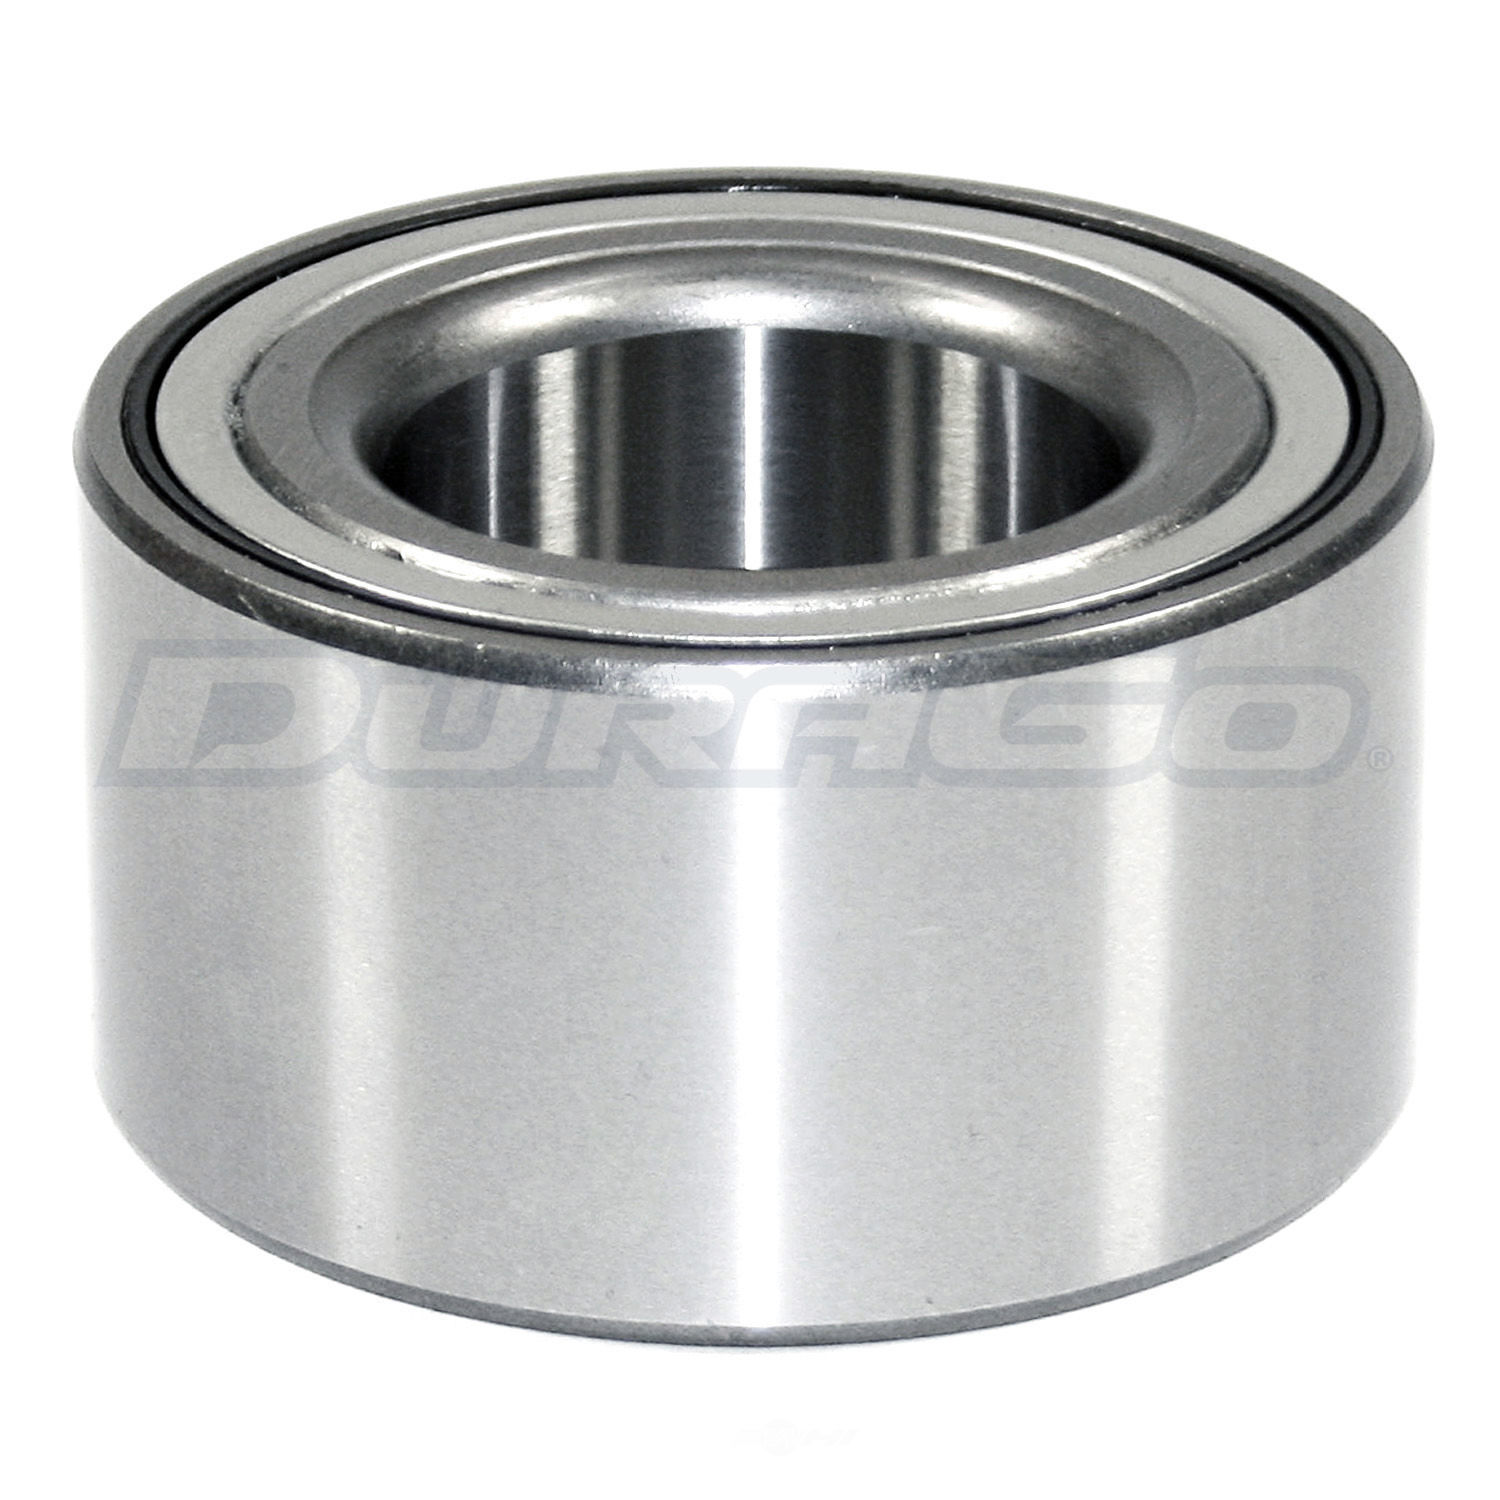 DURAGO - Wheel Bearing - D48 295-10055